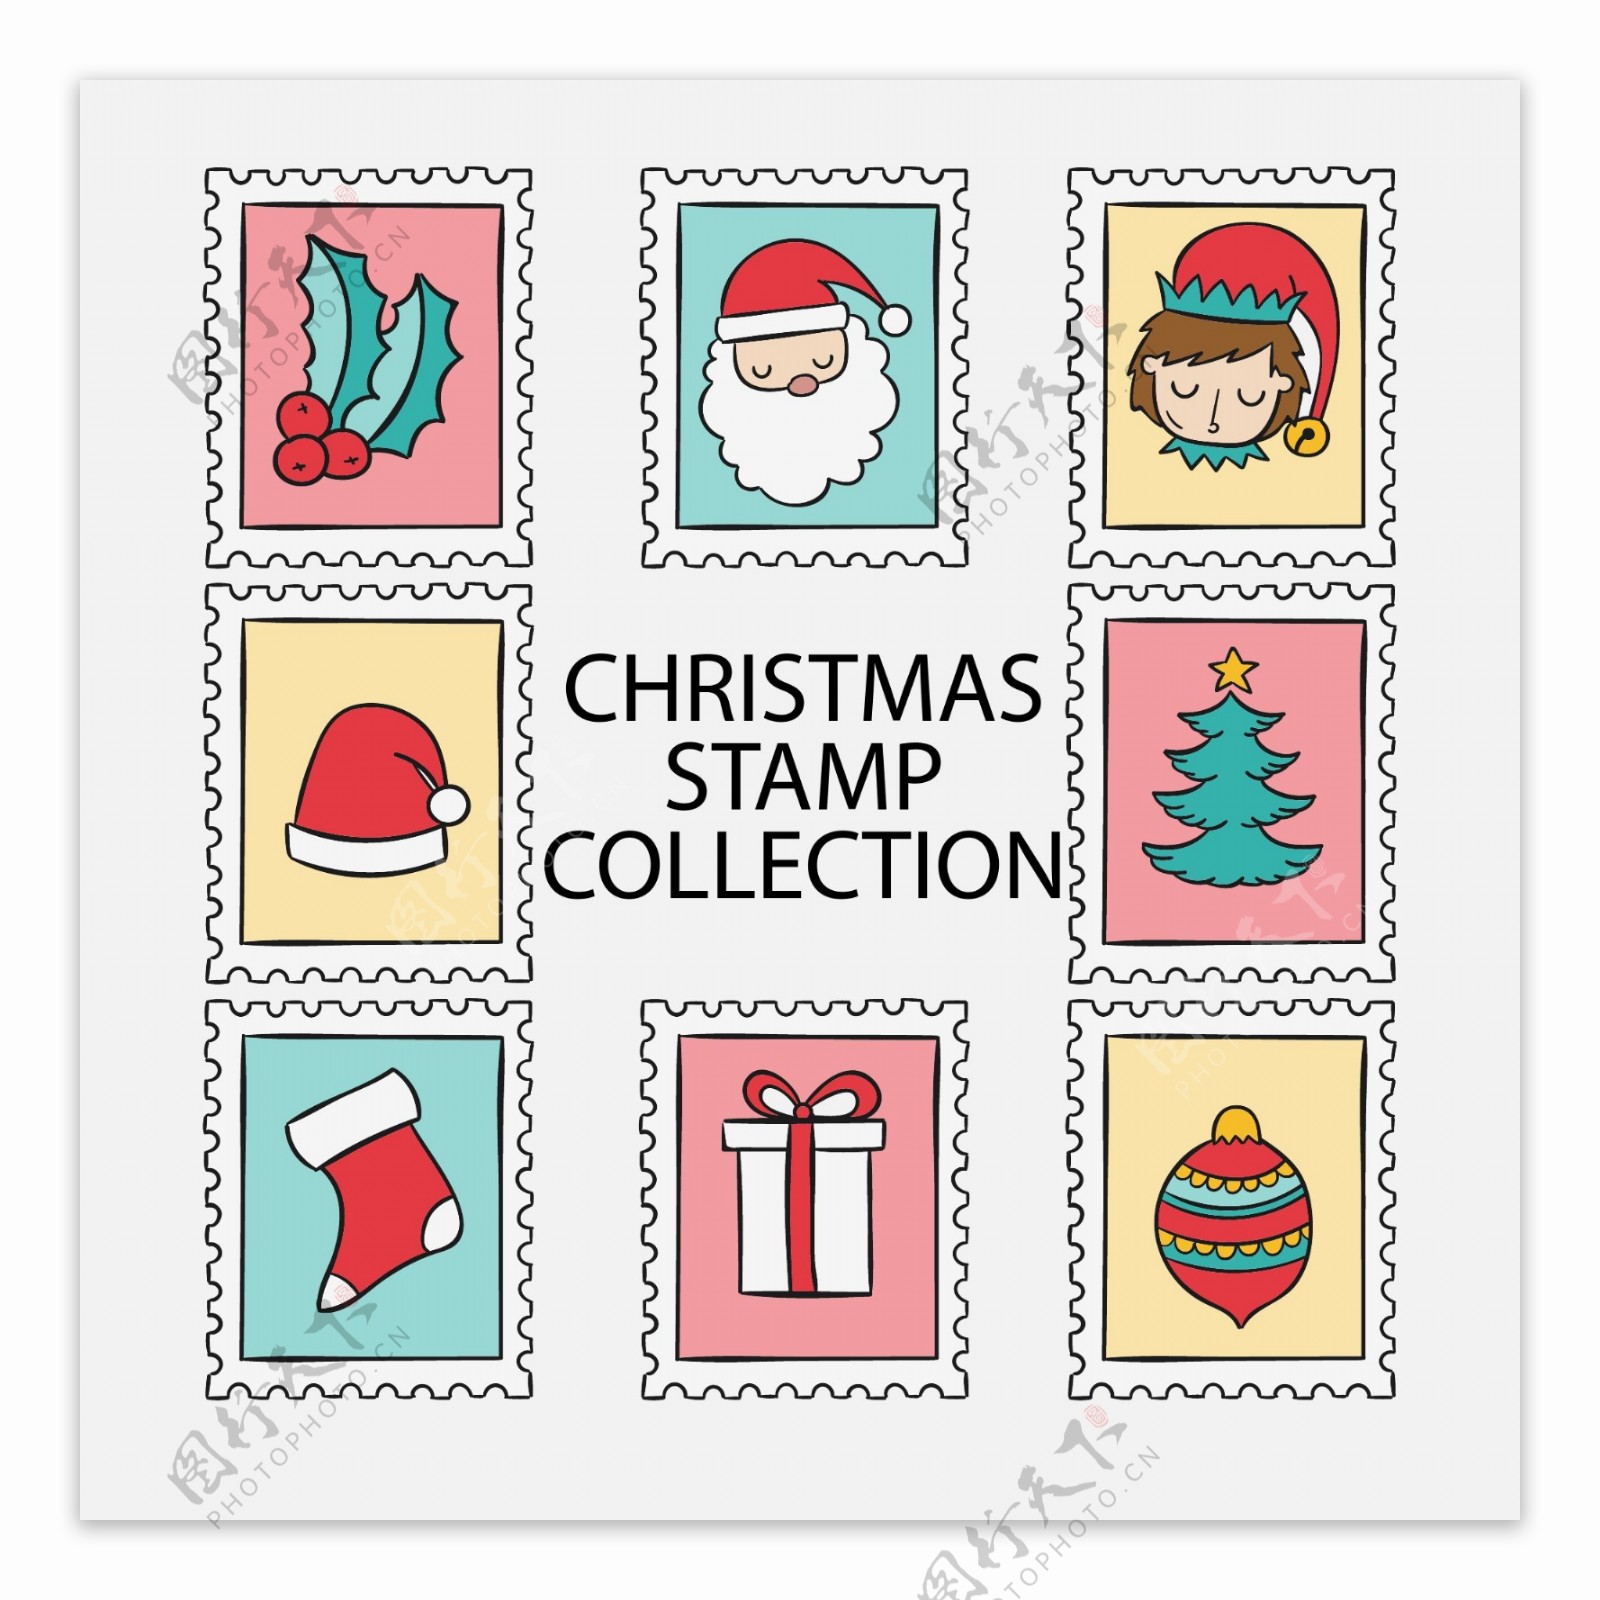 手绘的圣诞节邮票标签素材